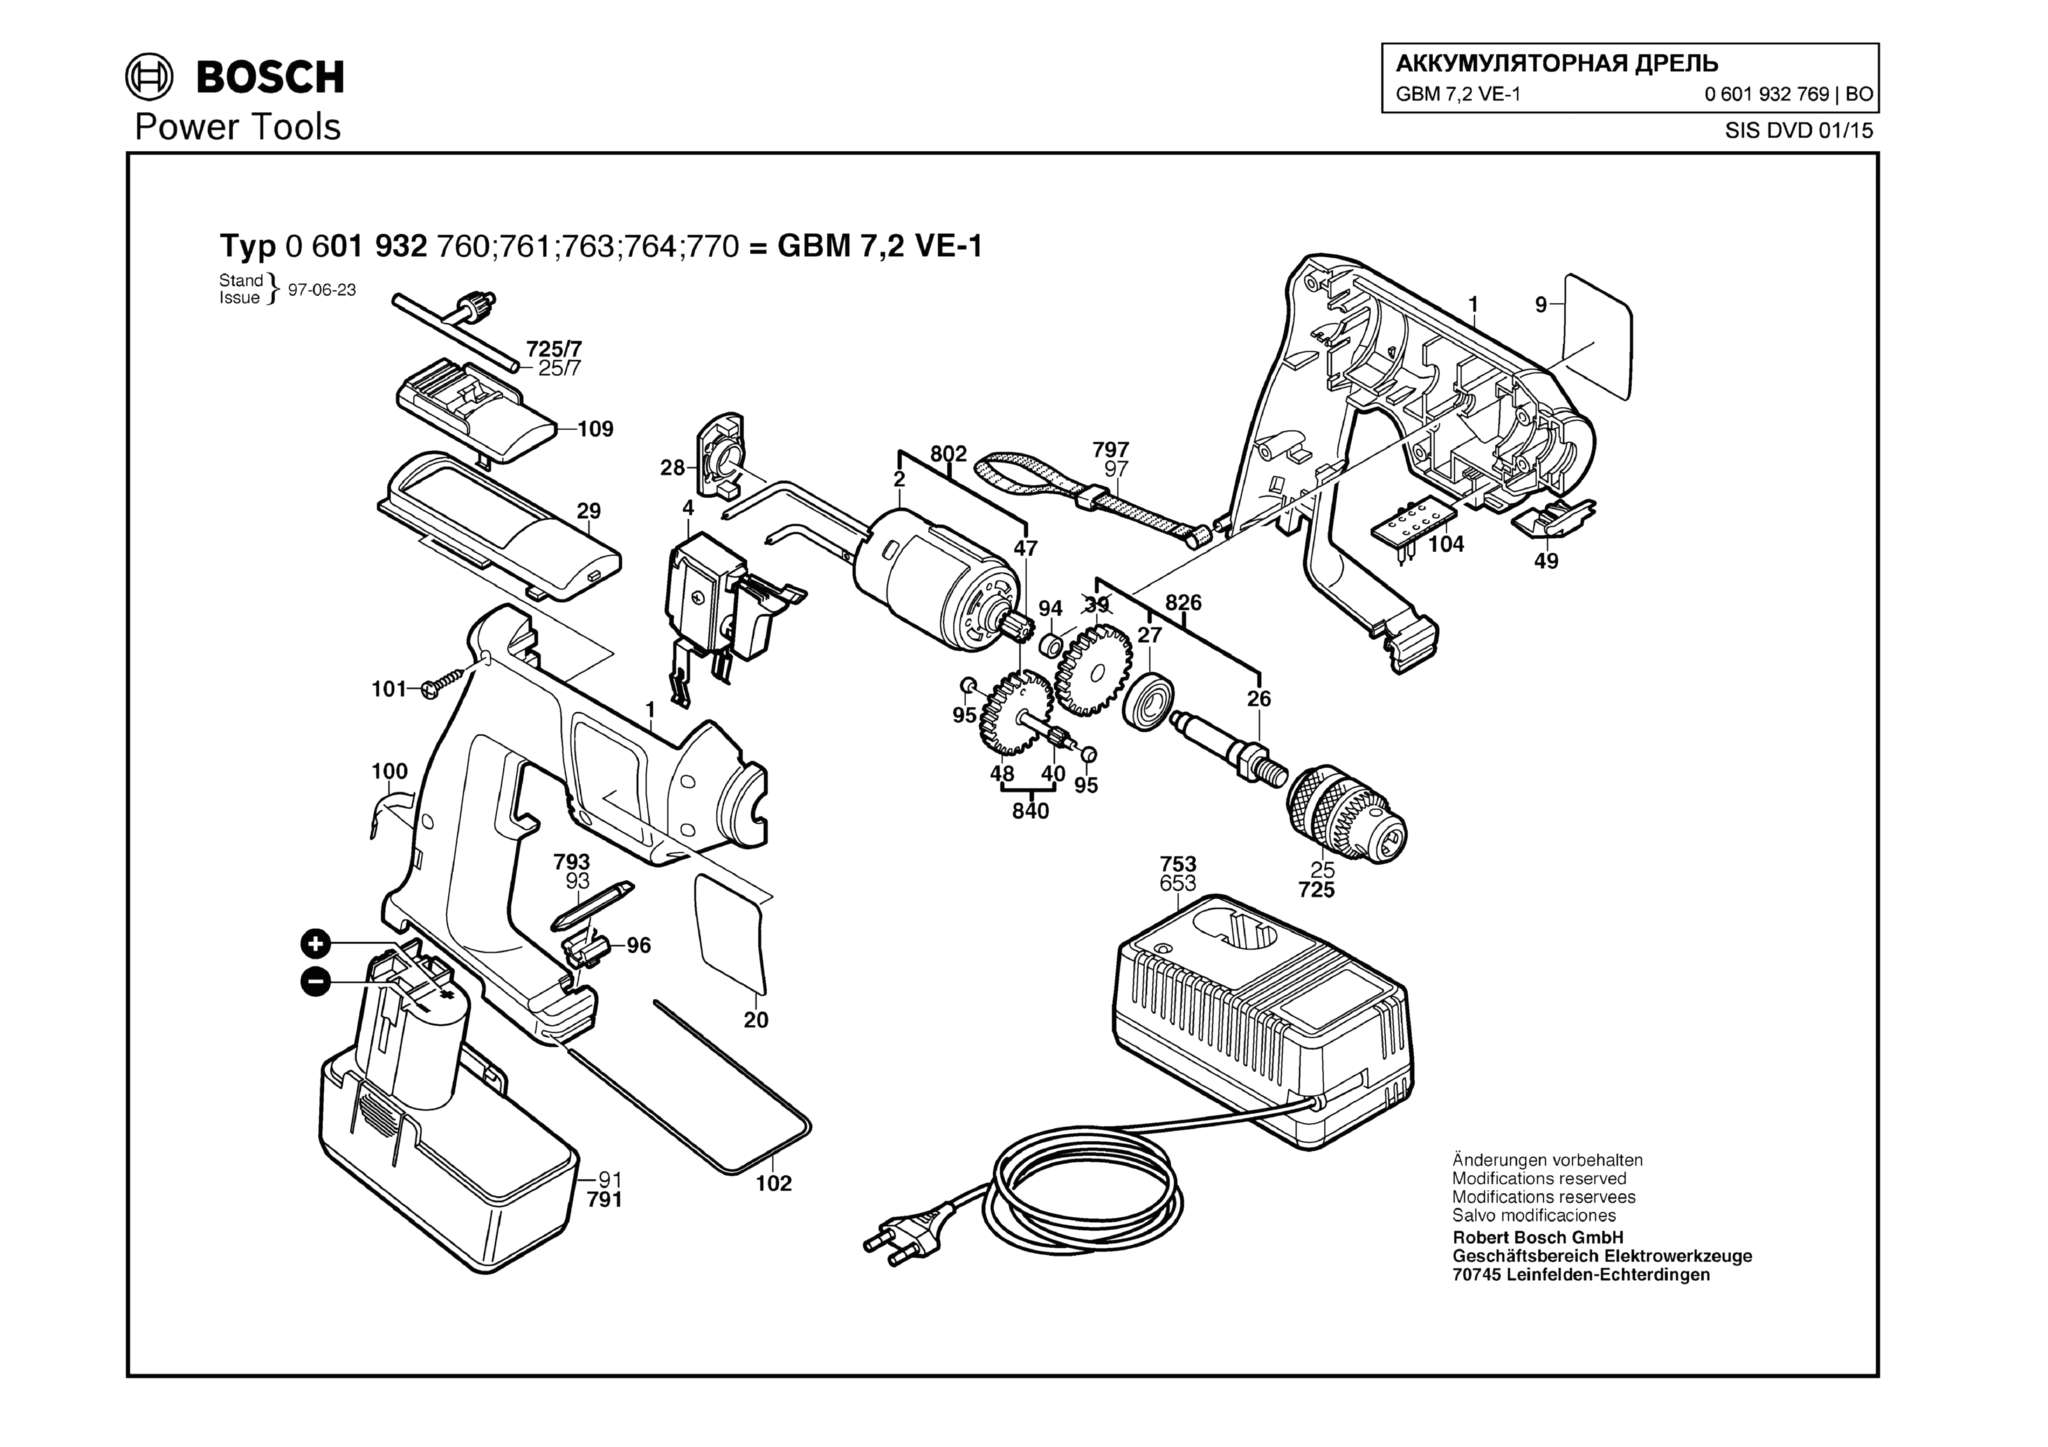 Запчасти, схема и деталировка Bosch GBM 7,2 VE-1 (ТИП 0601932769)